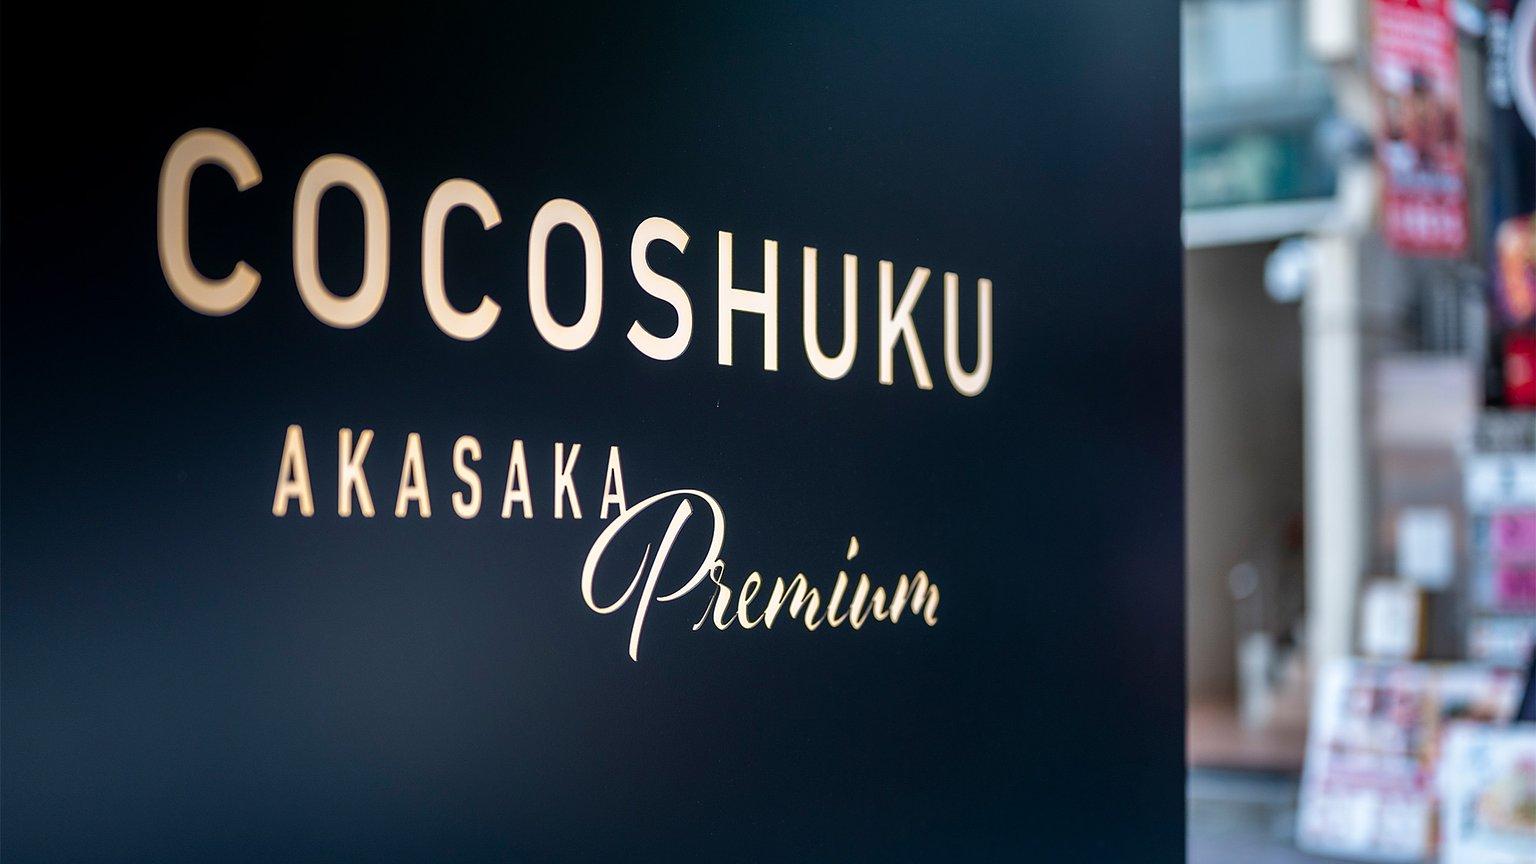 COCOSHUKU Akasaka Premium